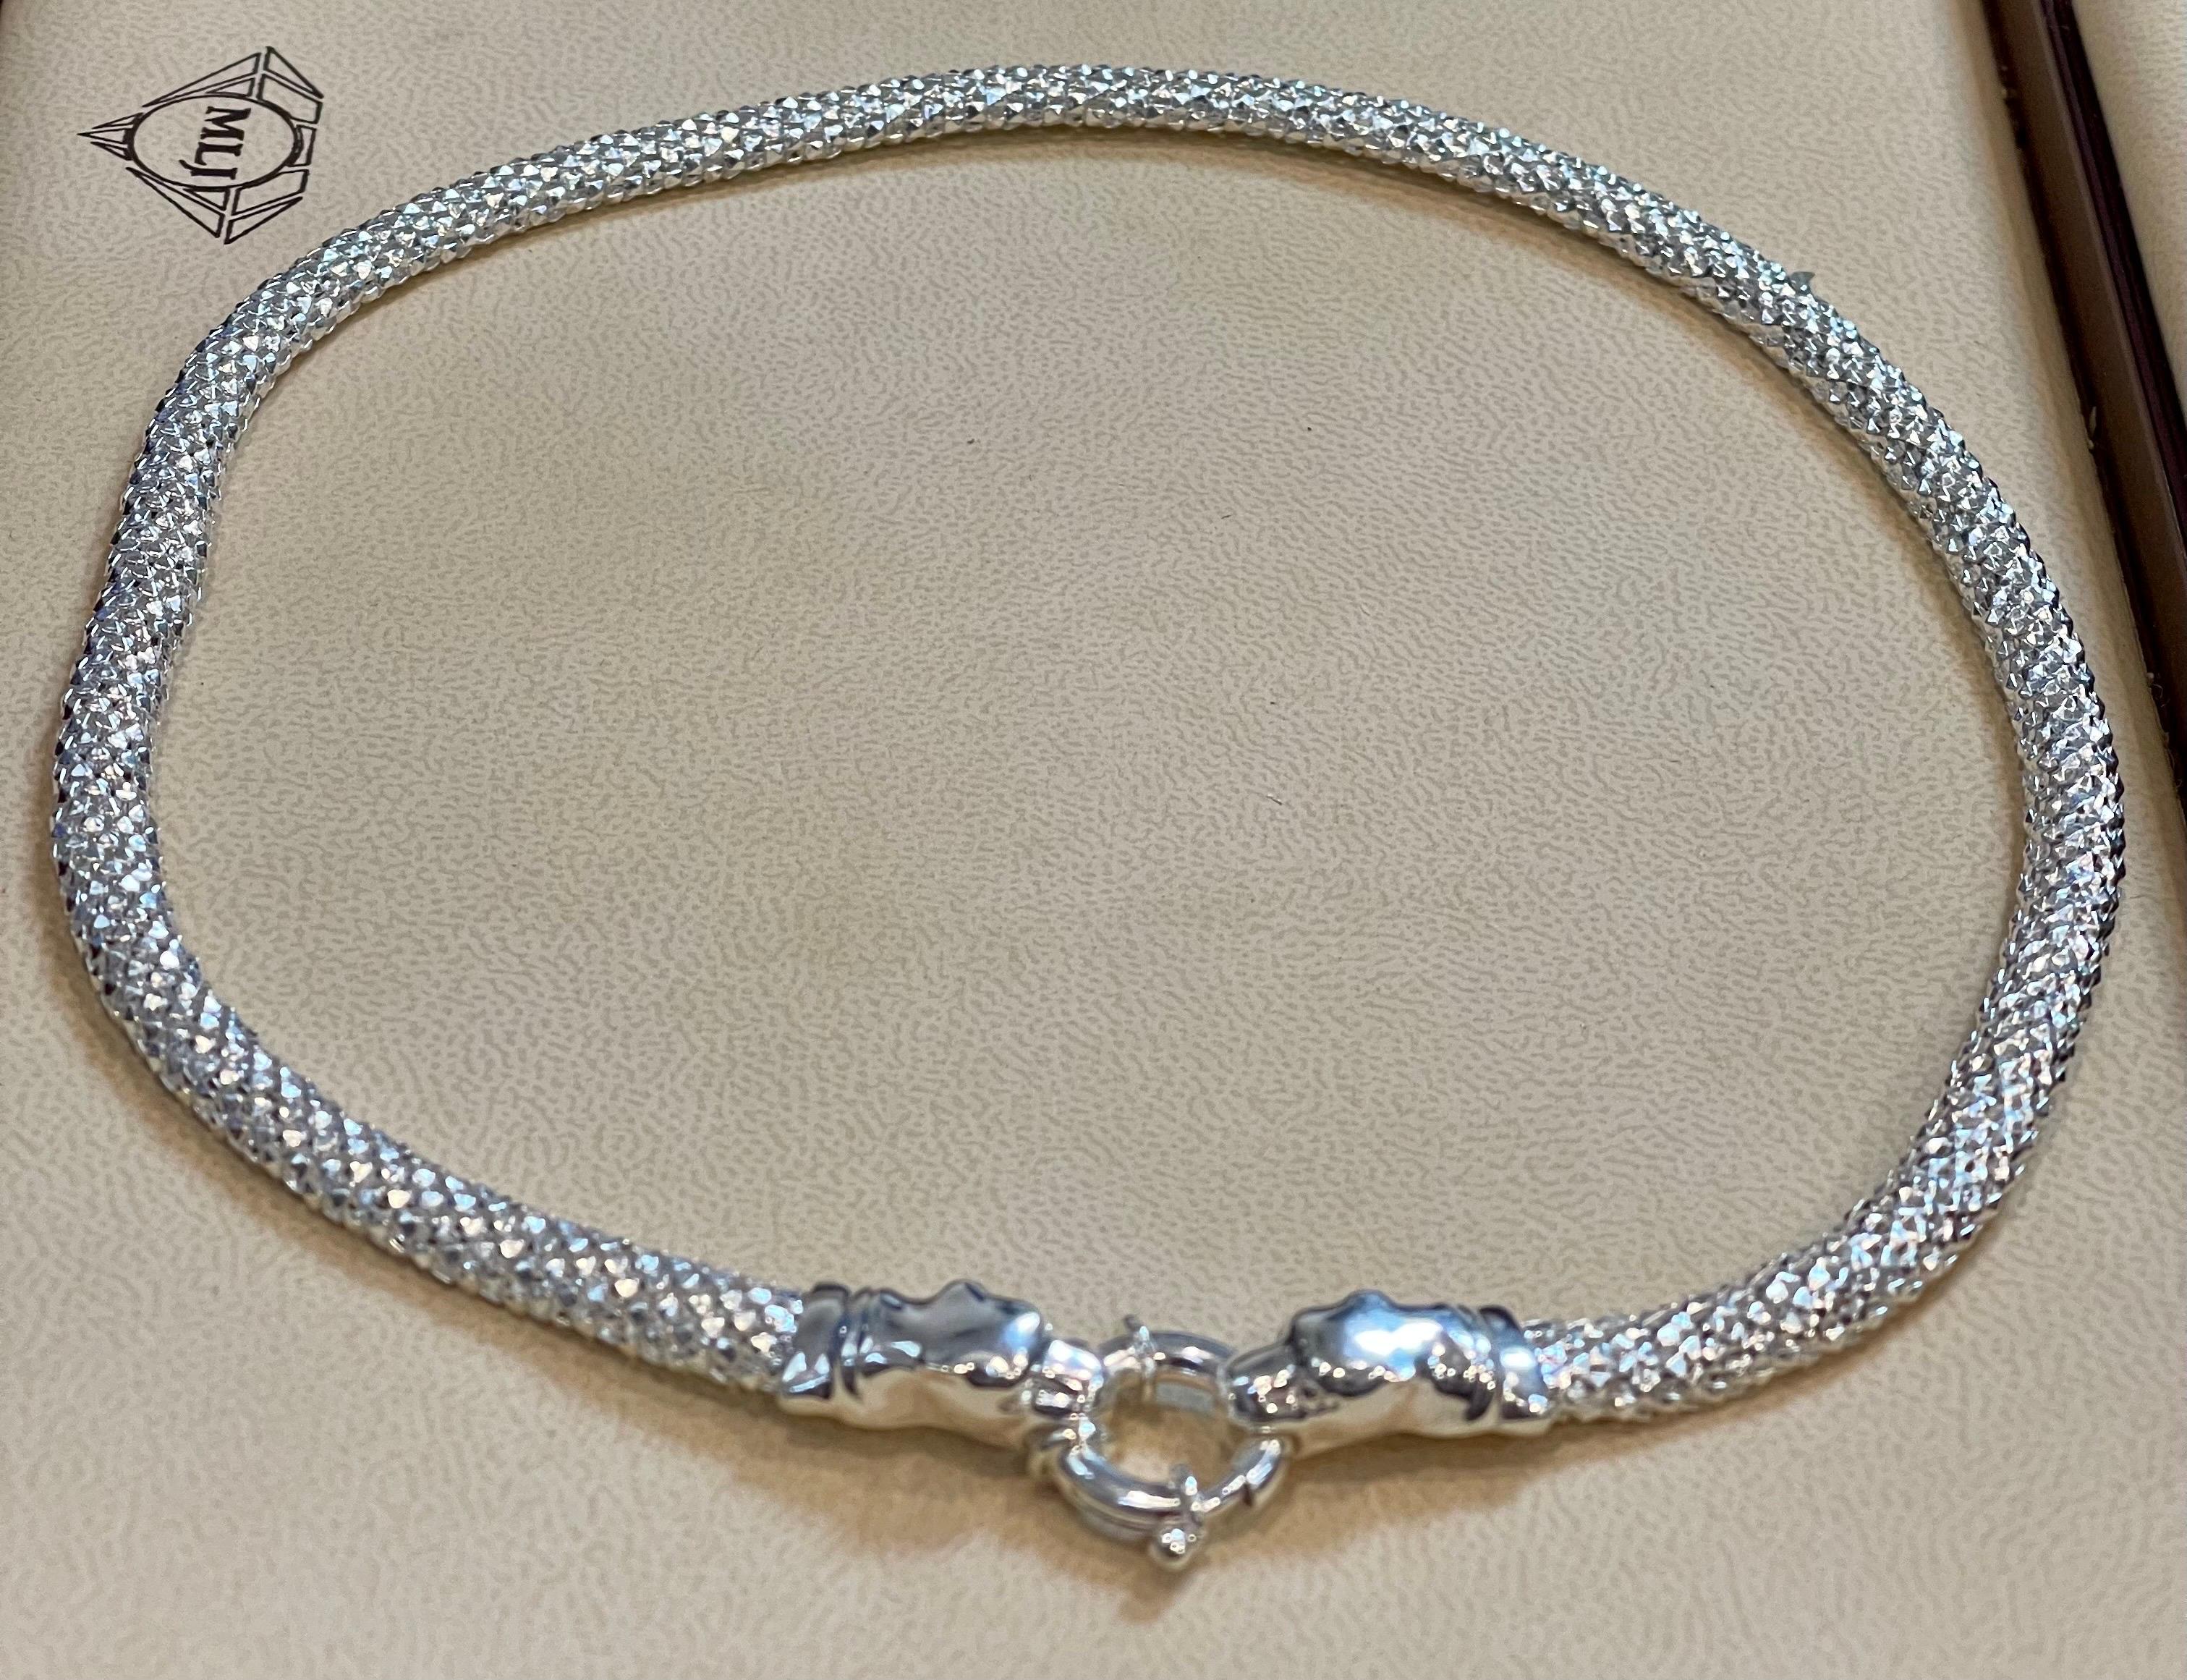  Timeless Elegance Sterling Silver Snake Necklace 16